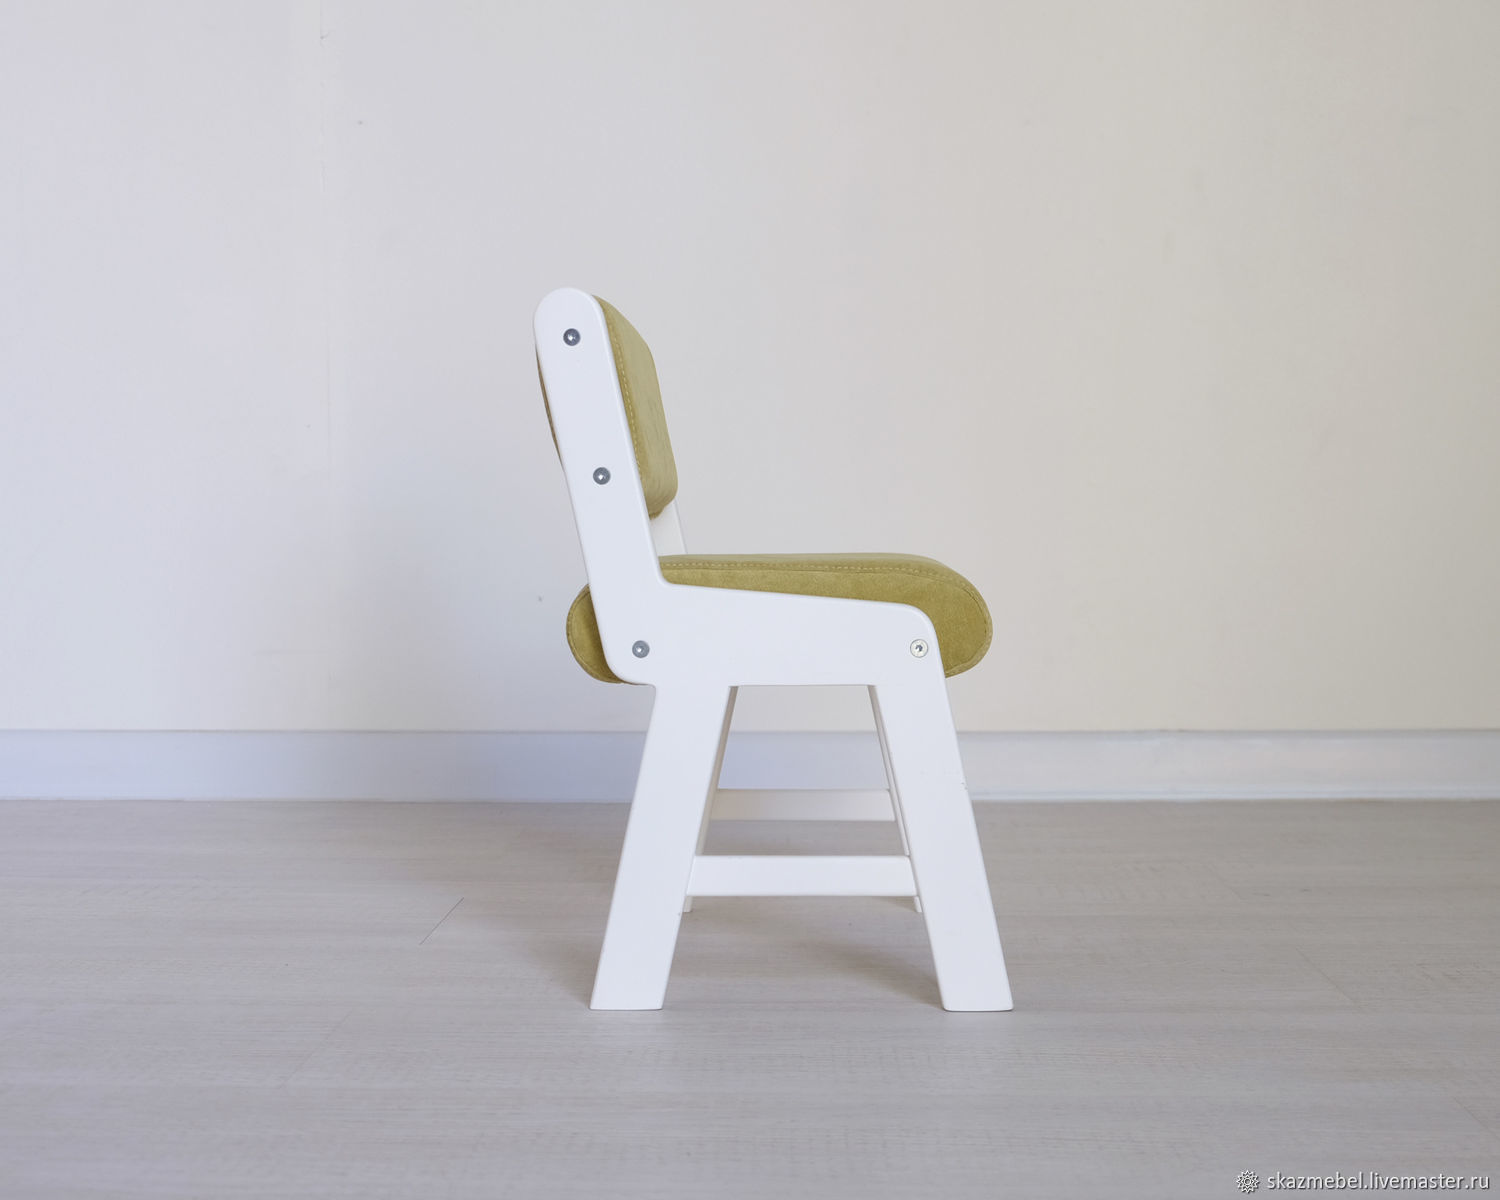 Ребенку 2 года белый стул